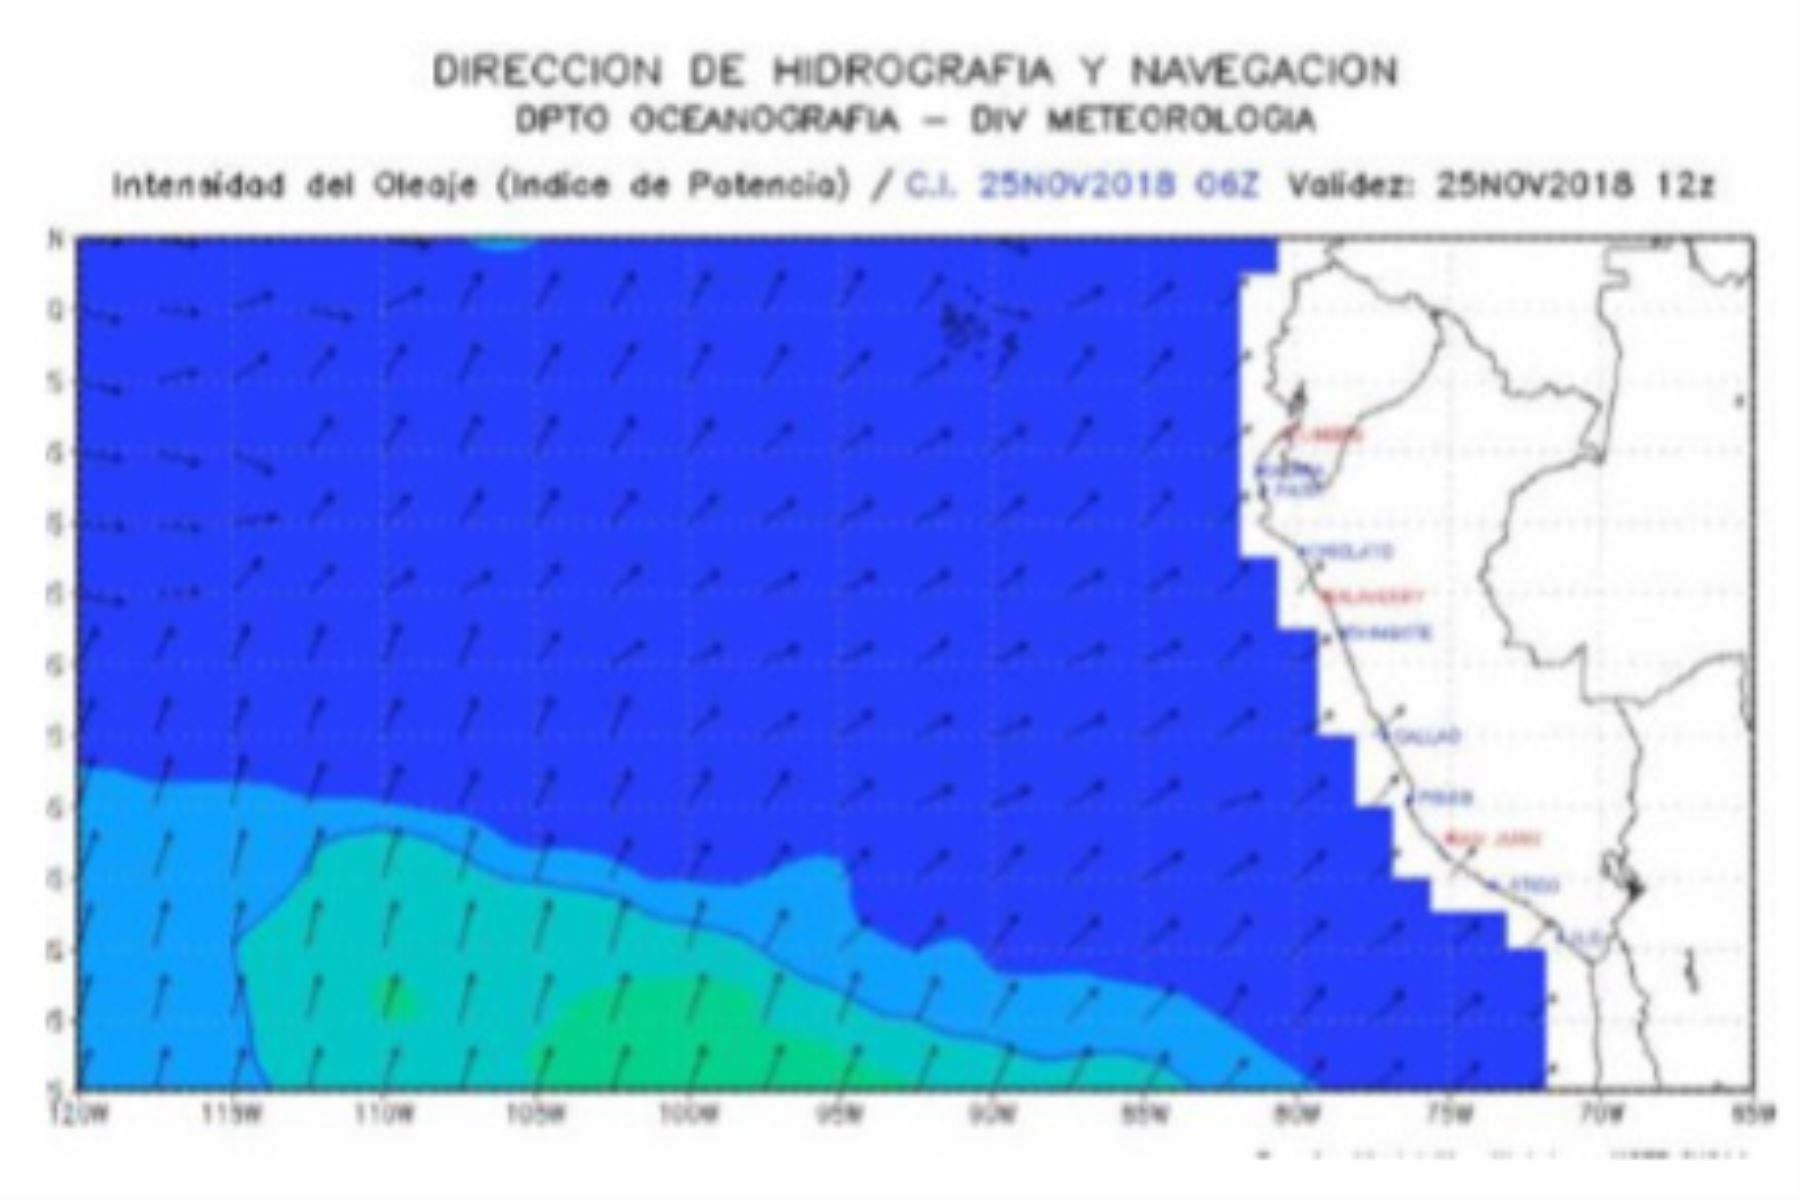 La Dirección de Hidrografía y Navegación (DHN) informó que actualmente el estado del mar en todo el litoral presenta condiciones normales; sin embargo, en la zona sur se espera la ocurrencia de oleaje ligero desde este lunes.